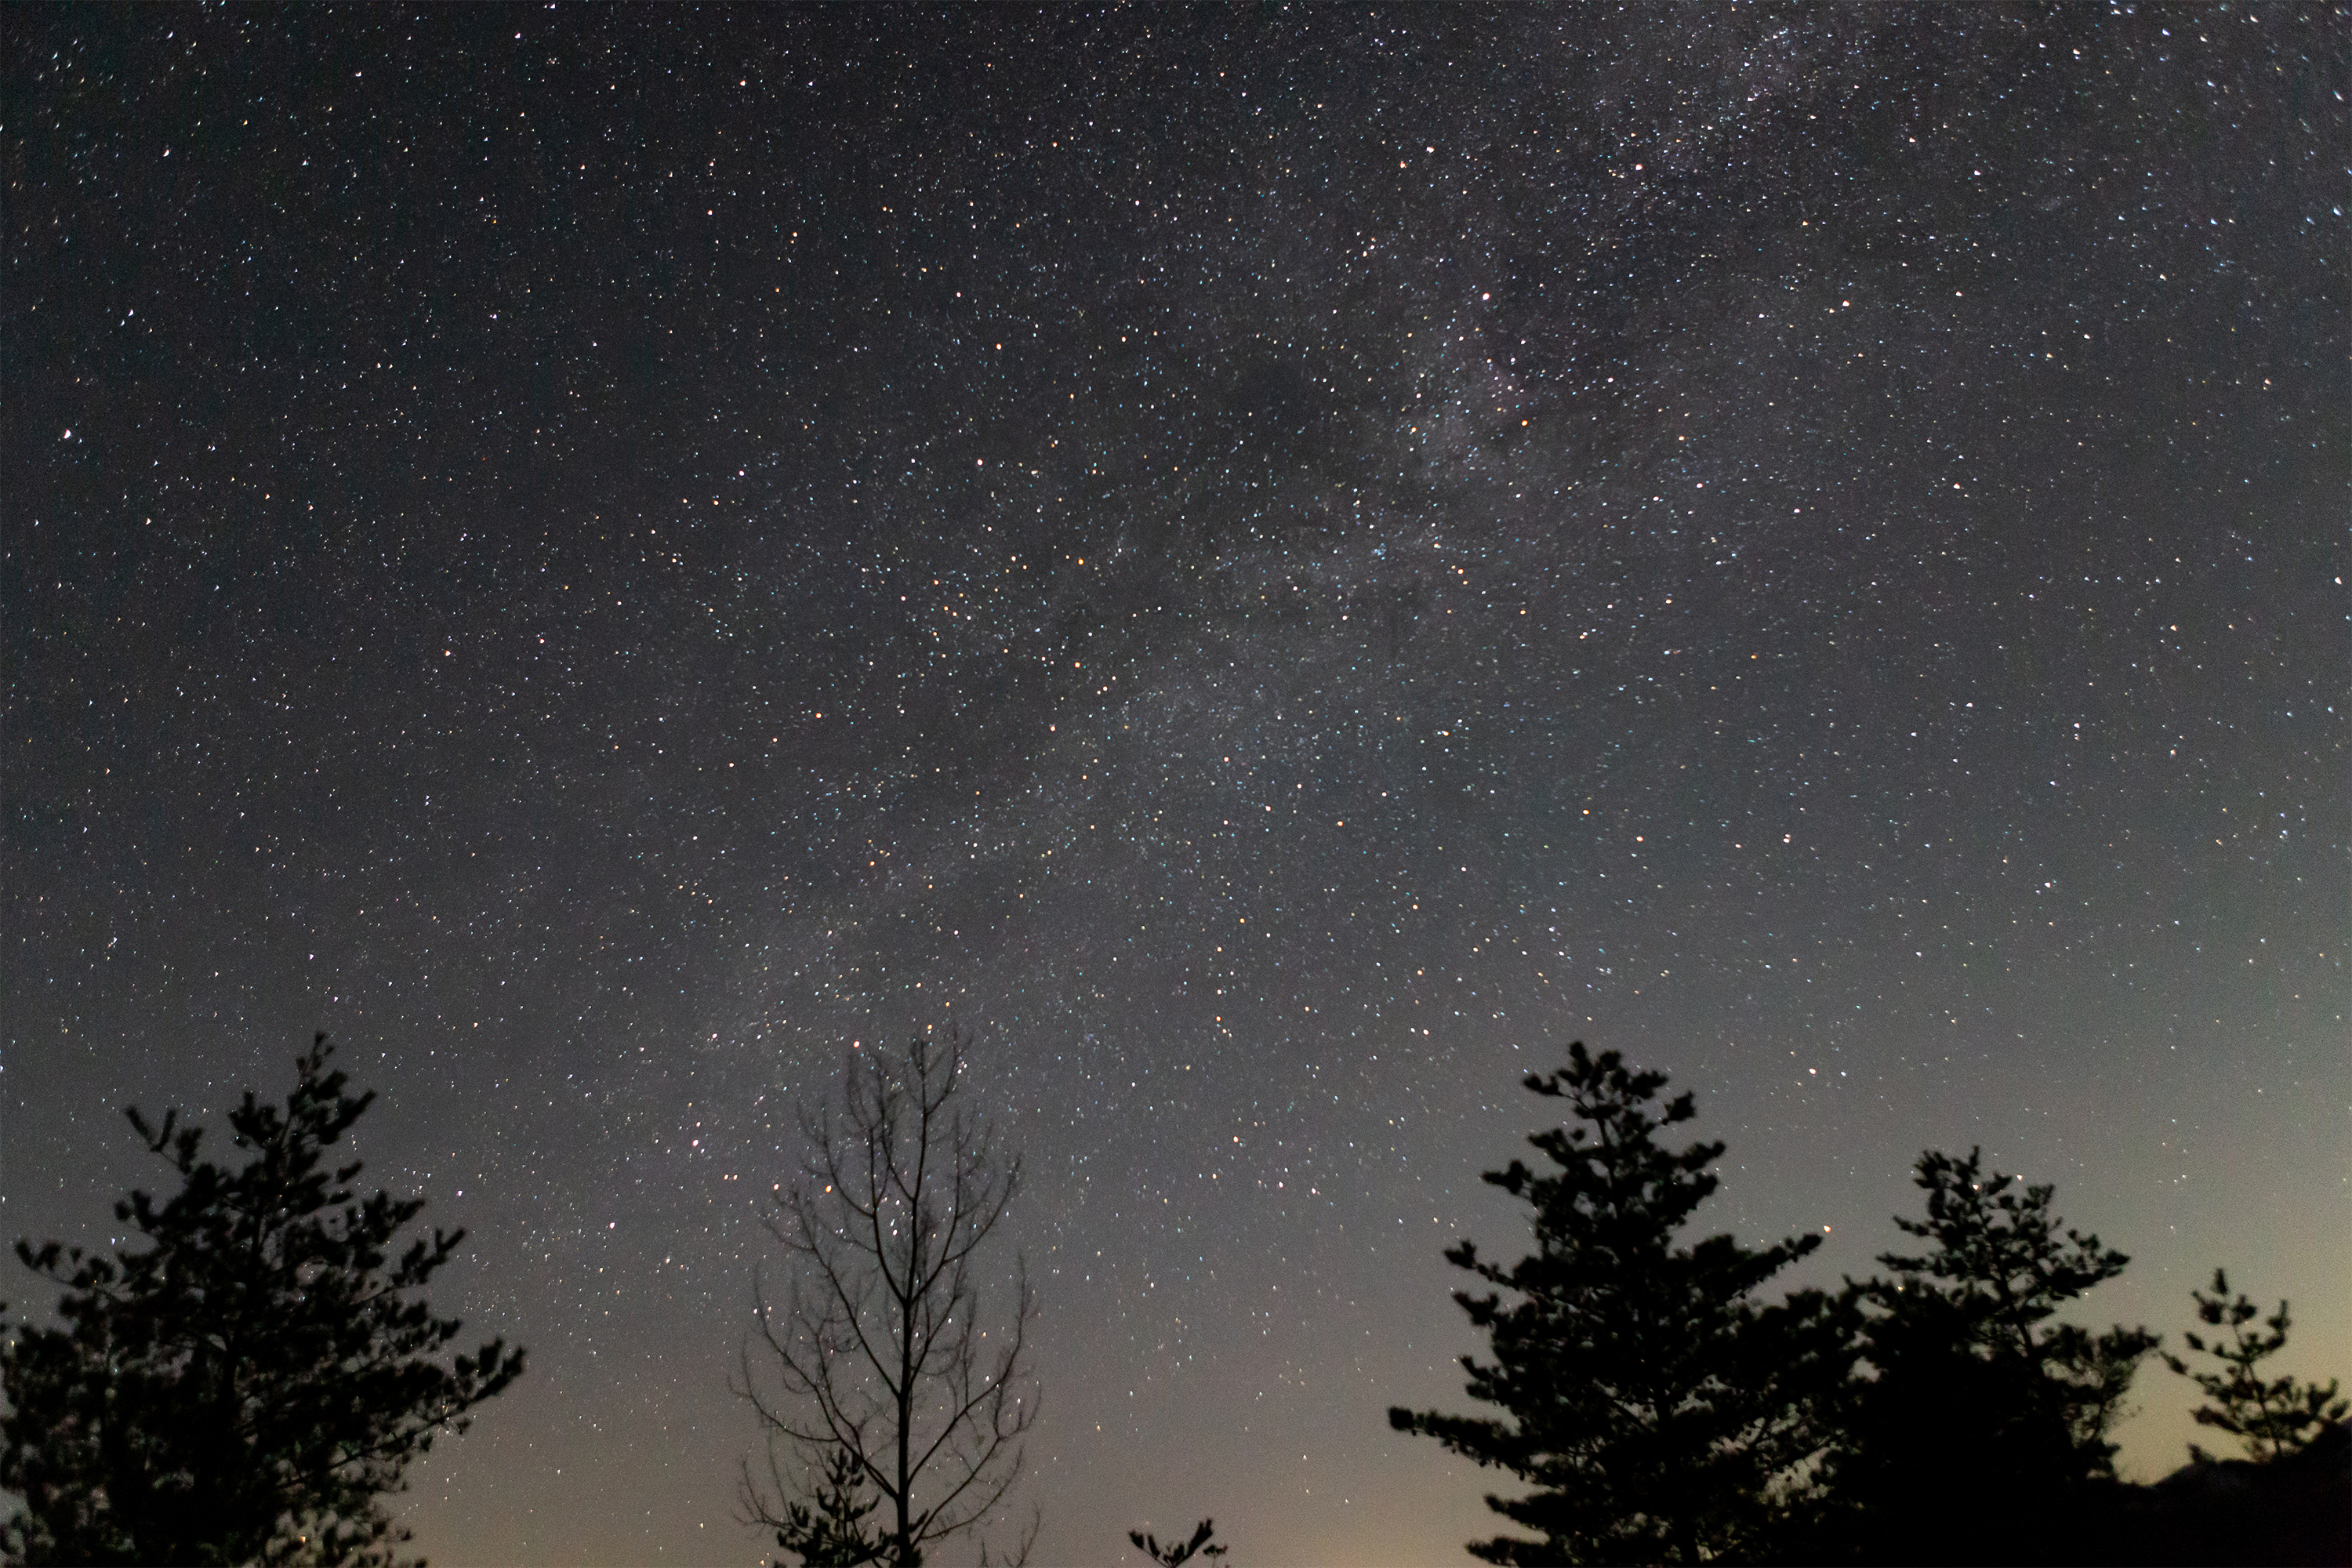 満点の星空と天の川02 無料の高画質フリー写真素材 イメージズラボ